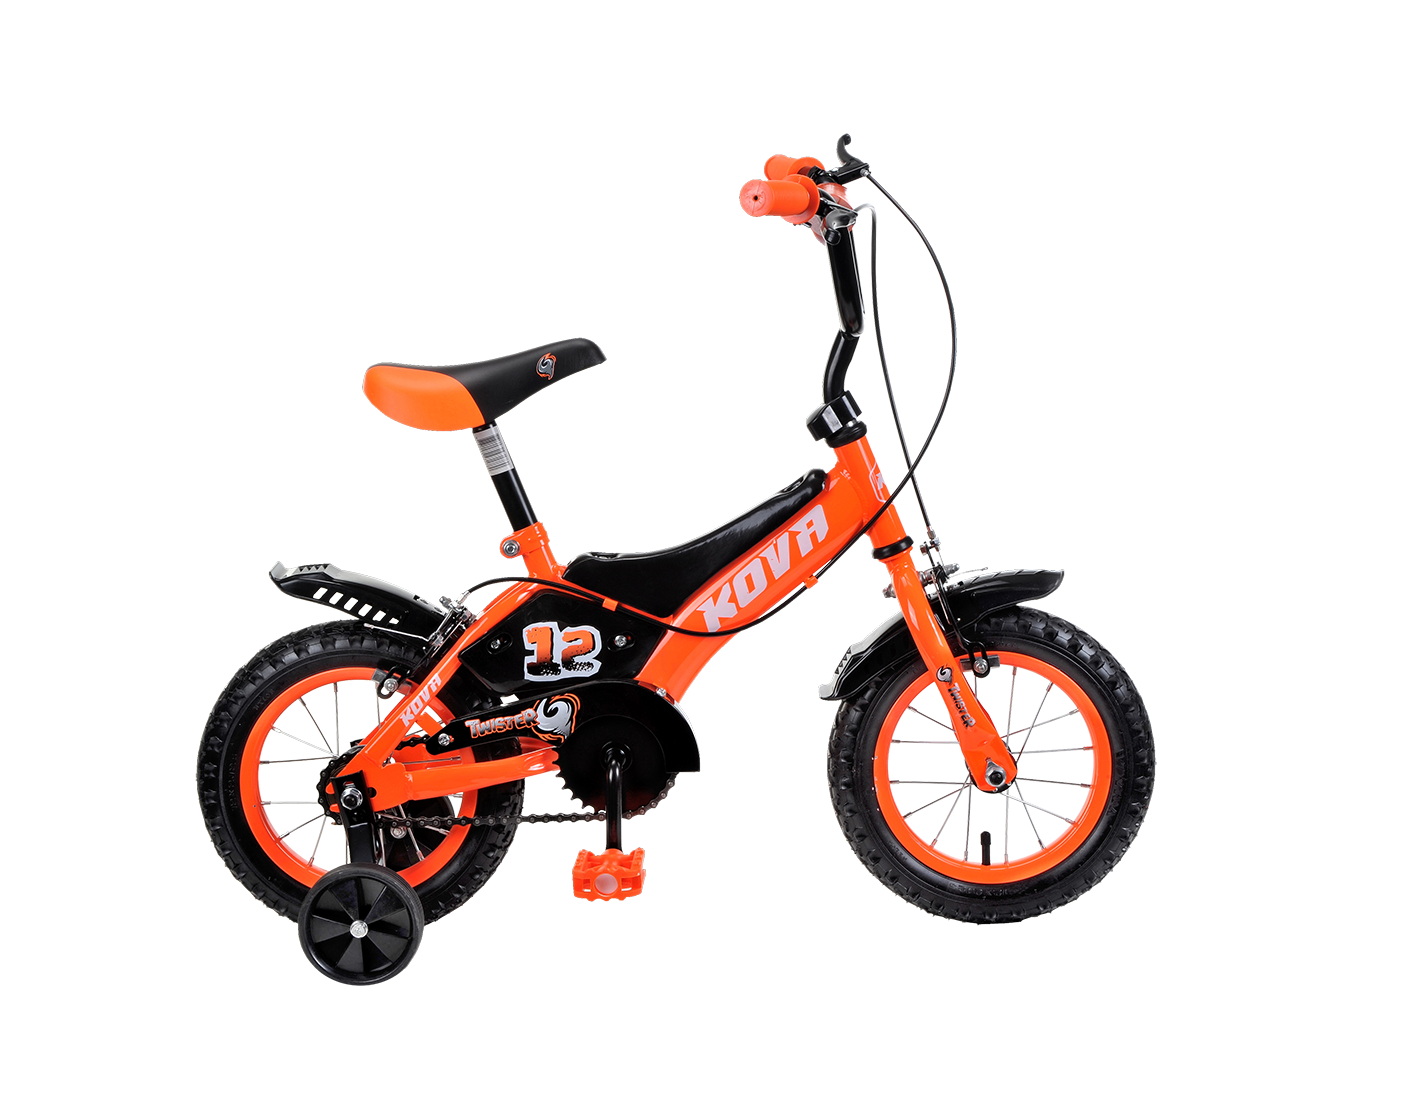 Bicicleta Kova Twister rodado 12, naranja